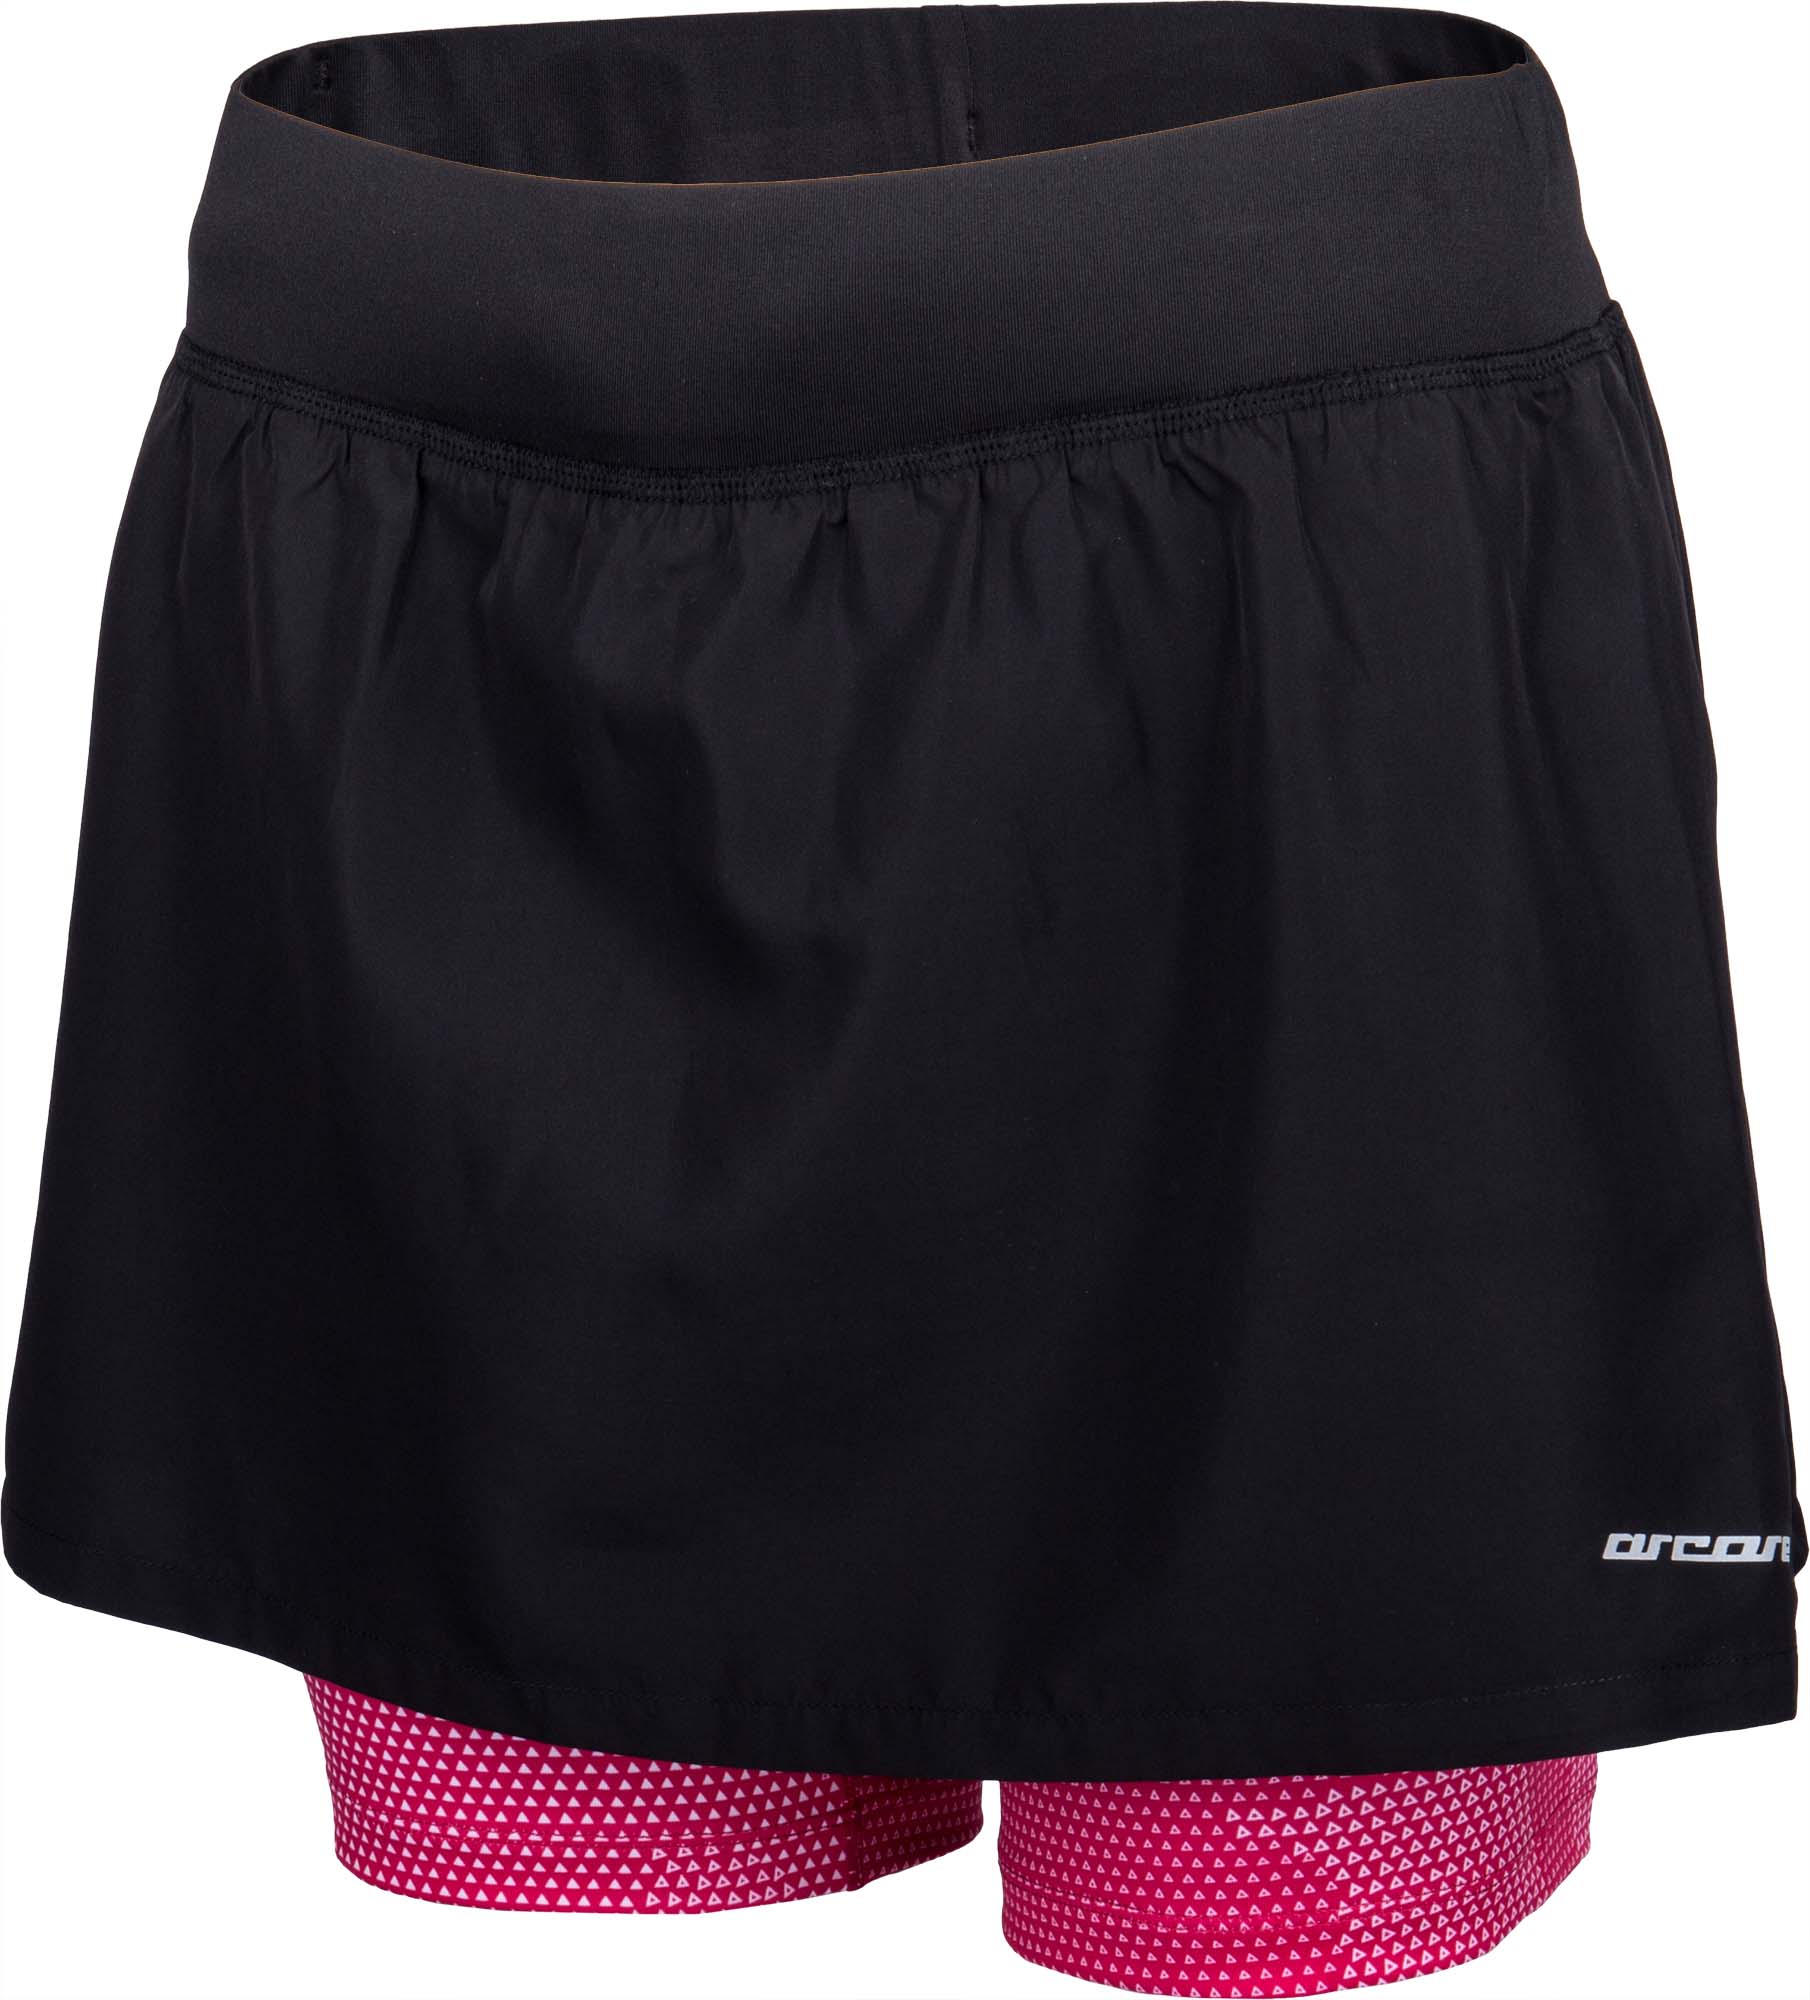 Women's running shorts with skirt